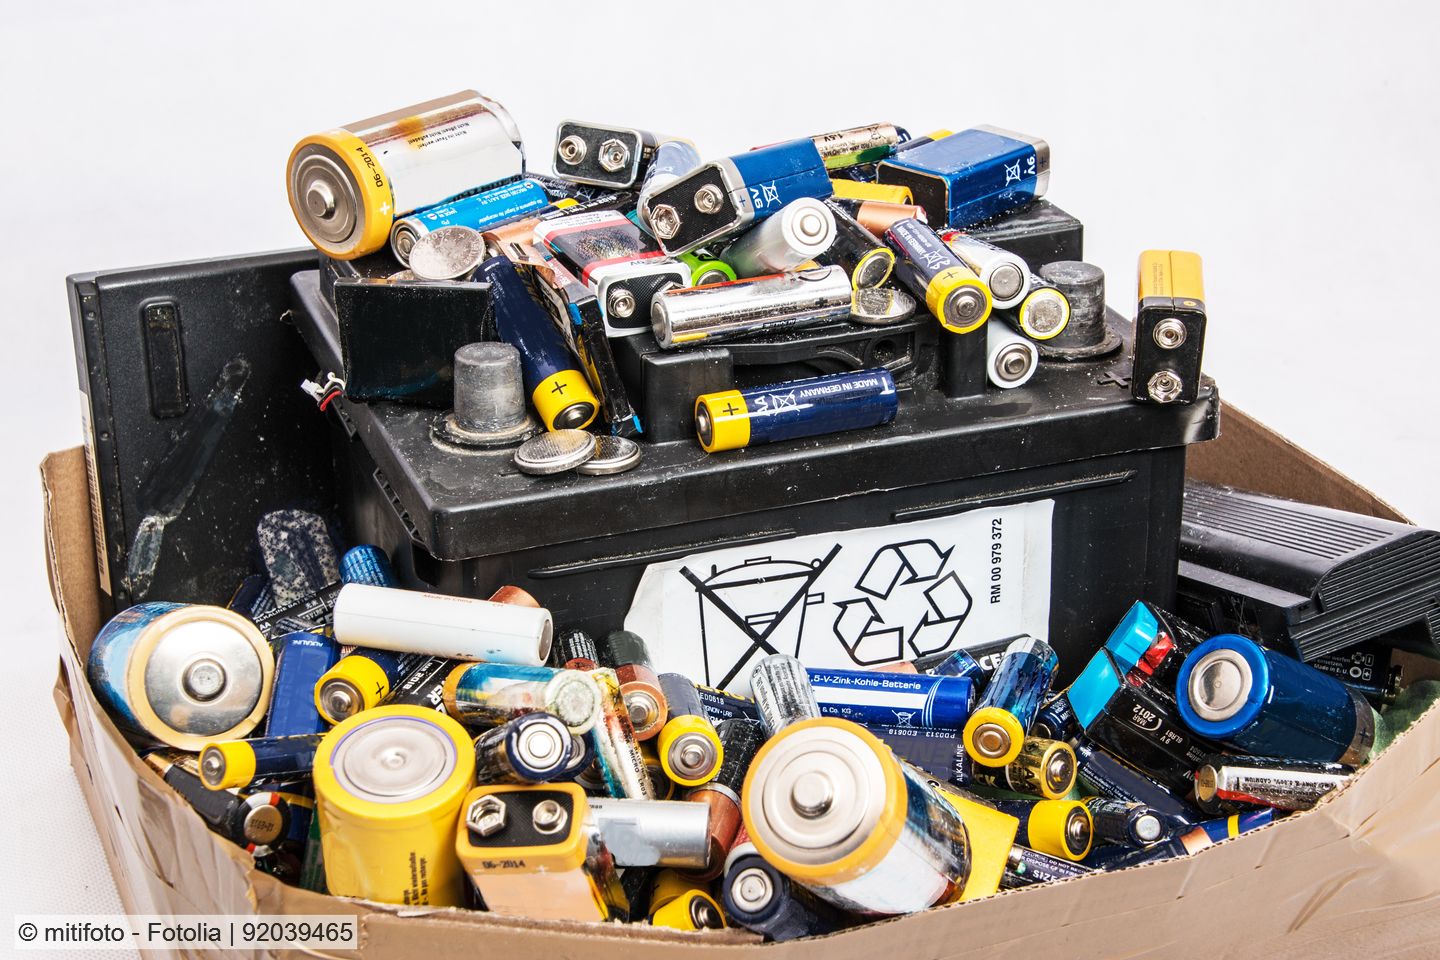 Sammelmenge von alten Gerätebatterien steigt in der EU auf rund 100.000 Tonnen